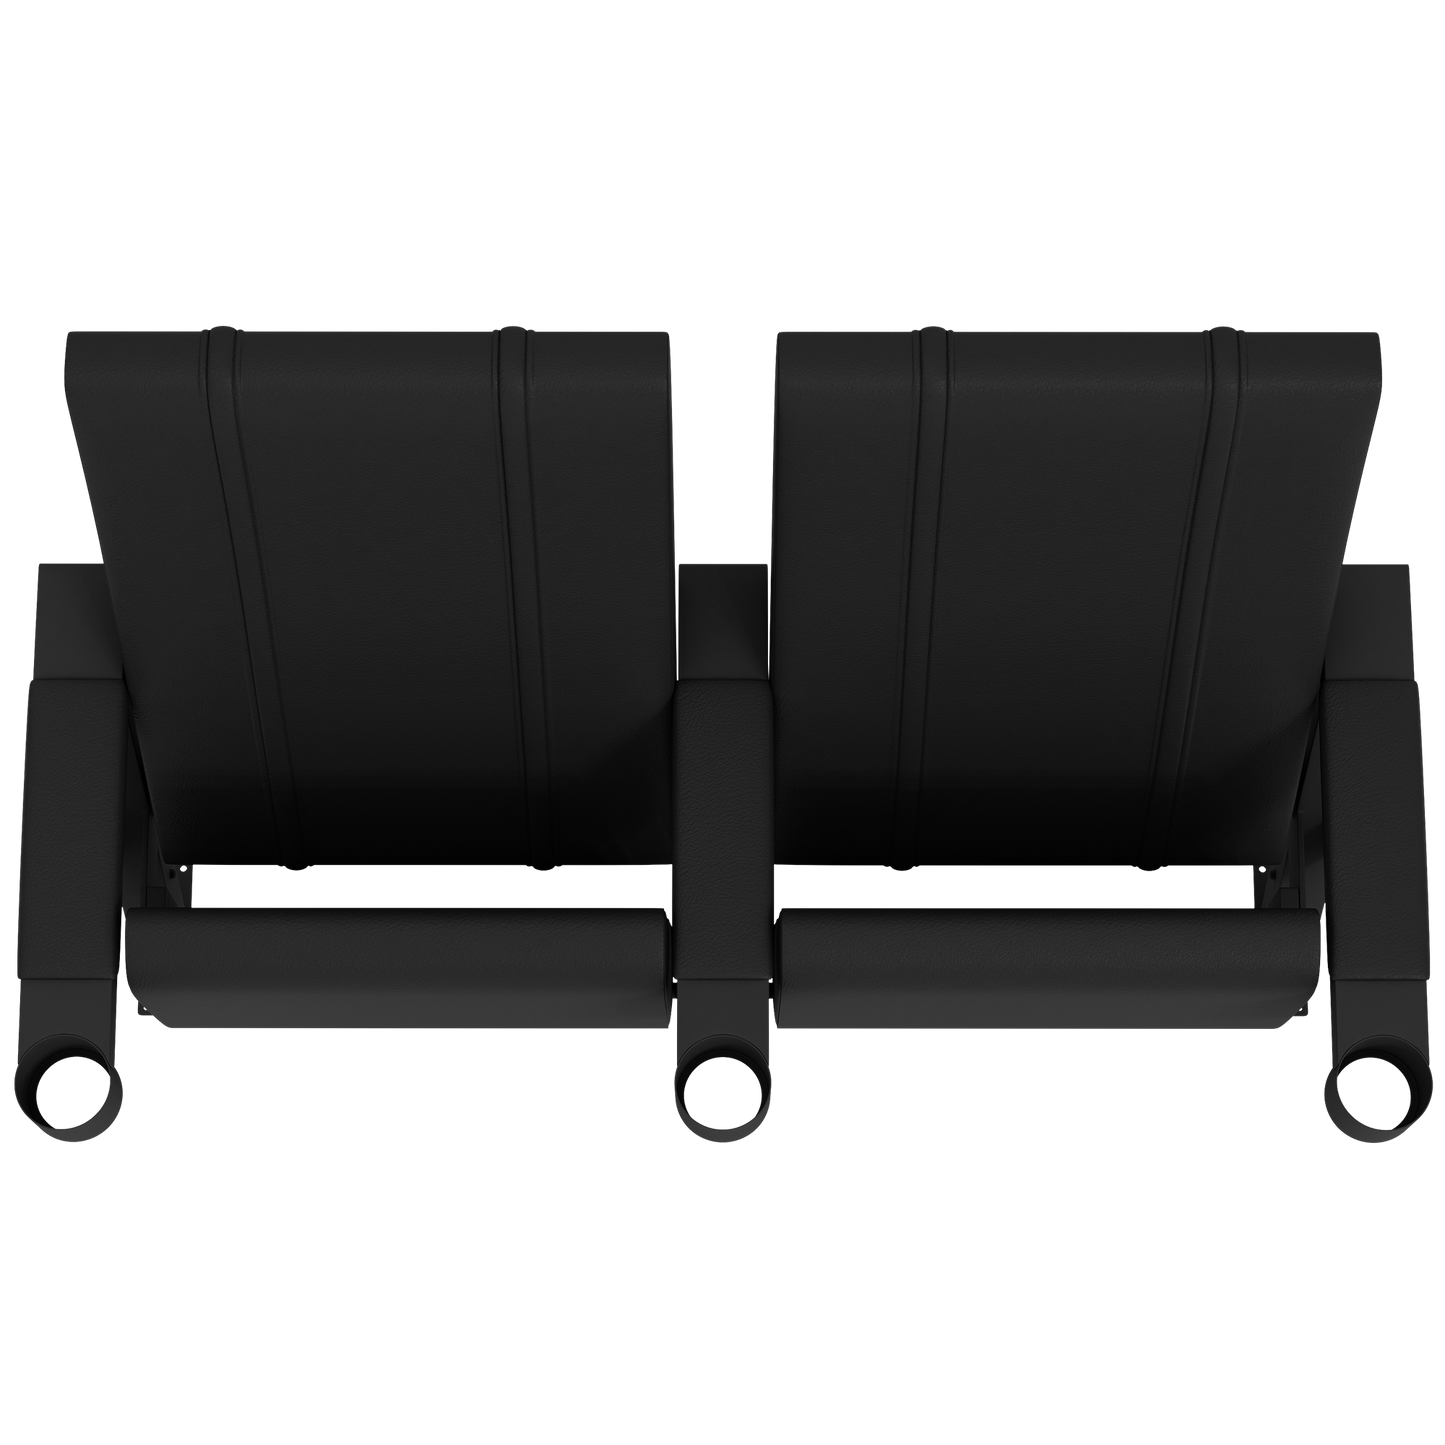 SuiteMax 3.5 VIP Seats with Georgetown Hoyas Alternate